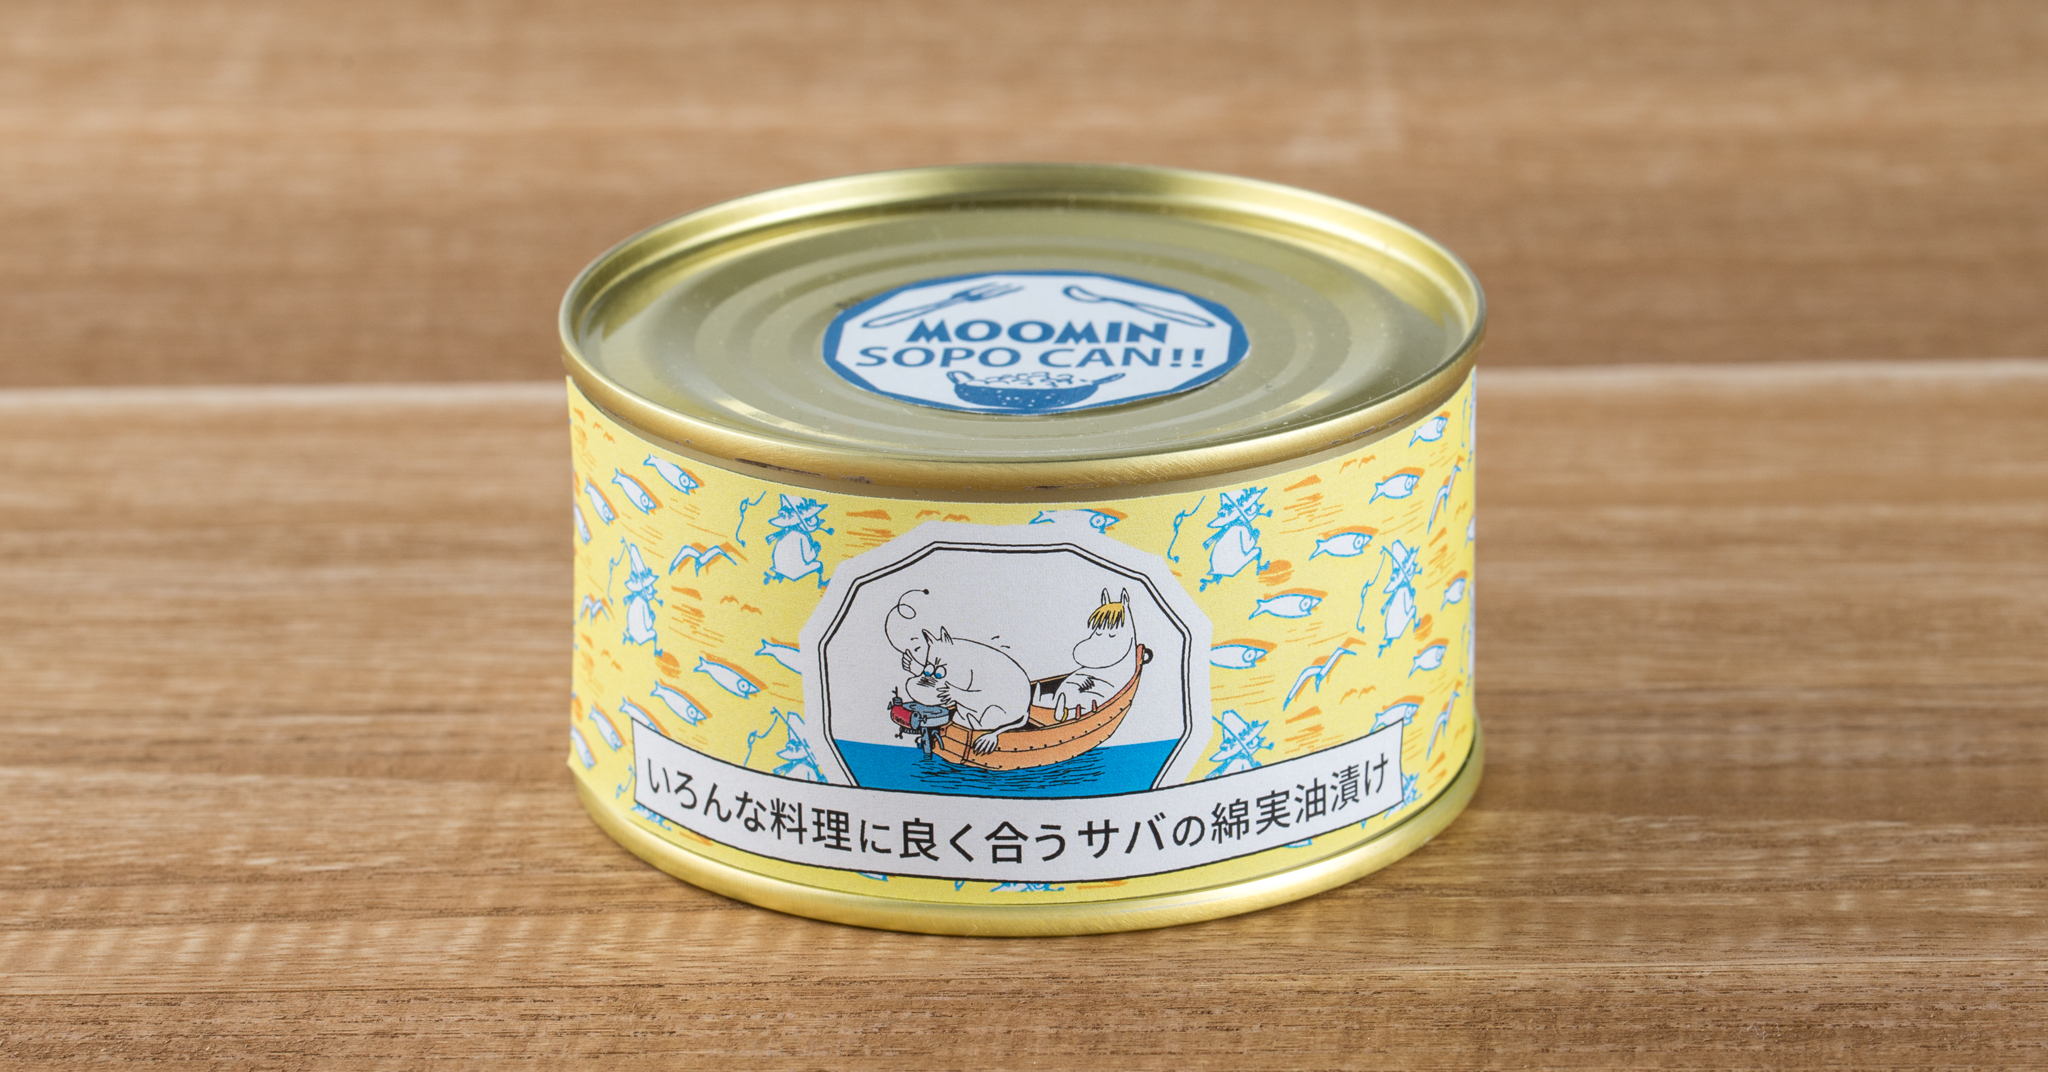 ムーミン公式オンラインショップPEIKKO キャンペーン・特集 備えよう特集 缶詰食品